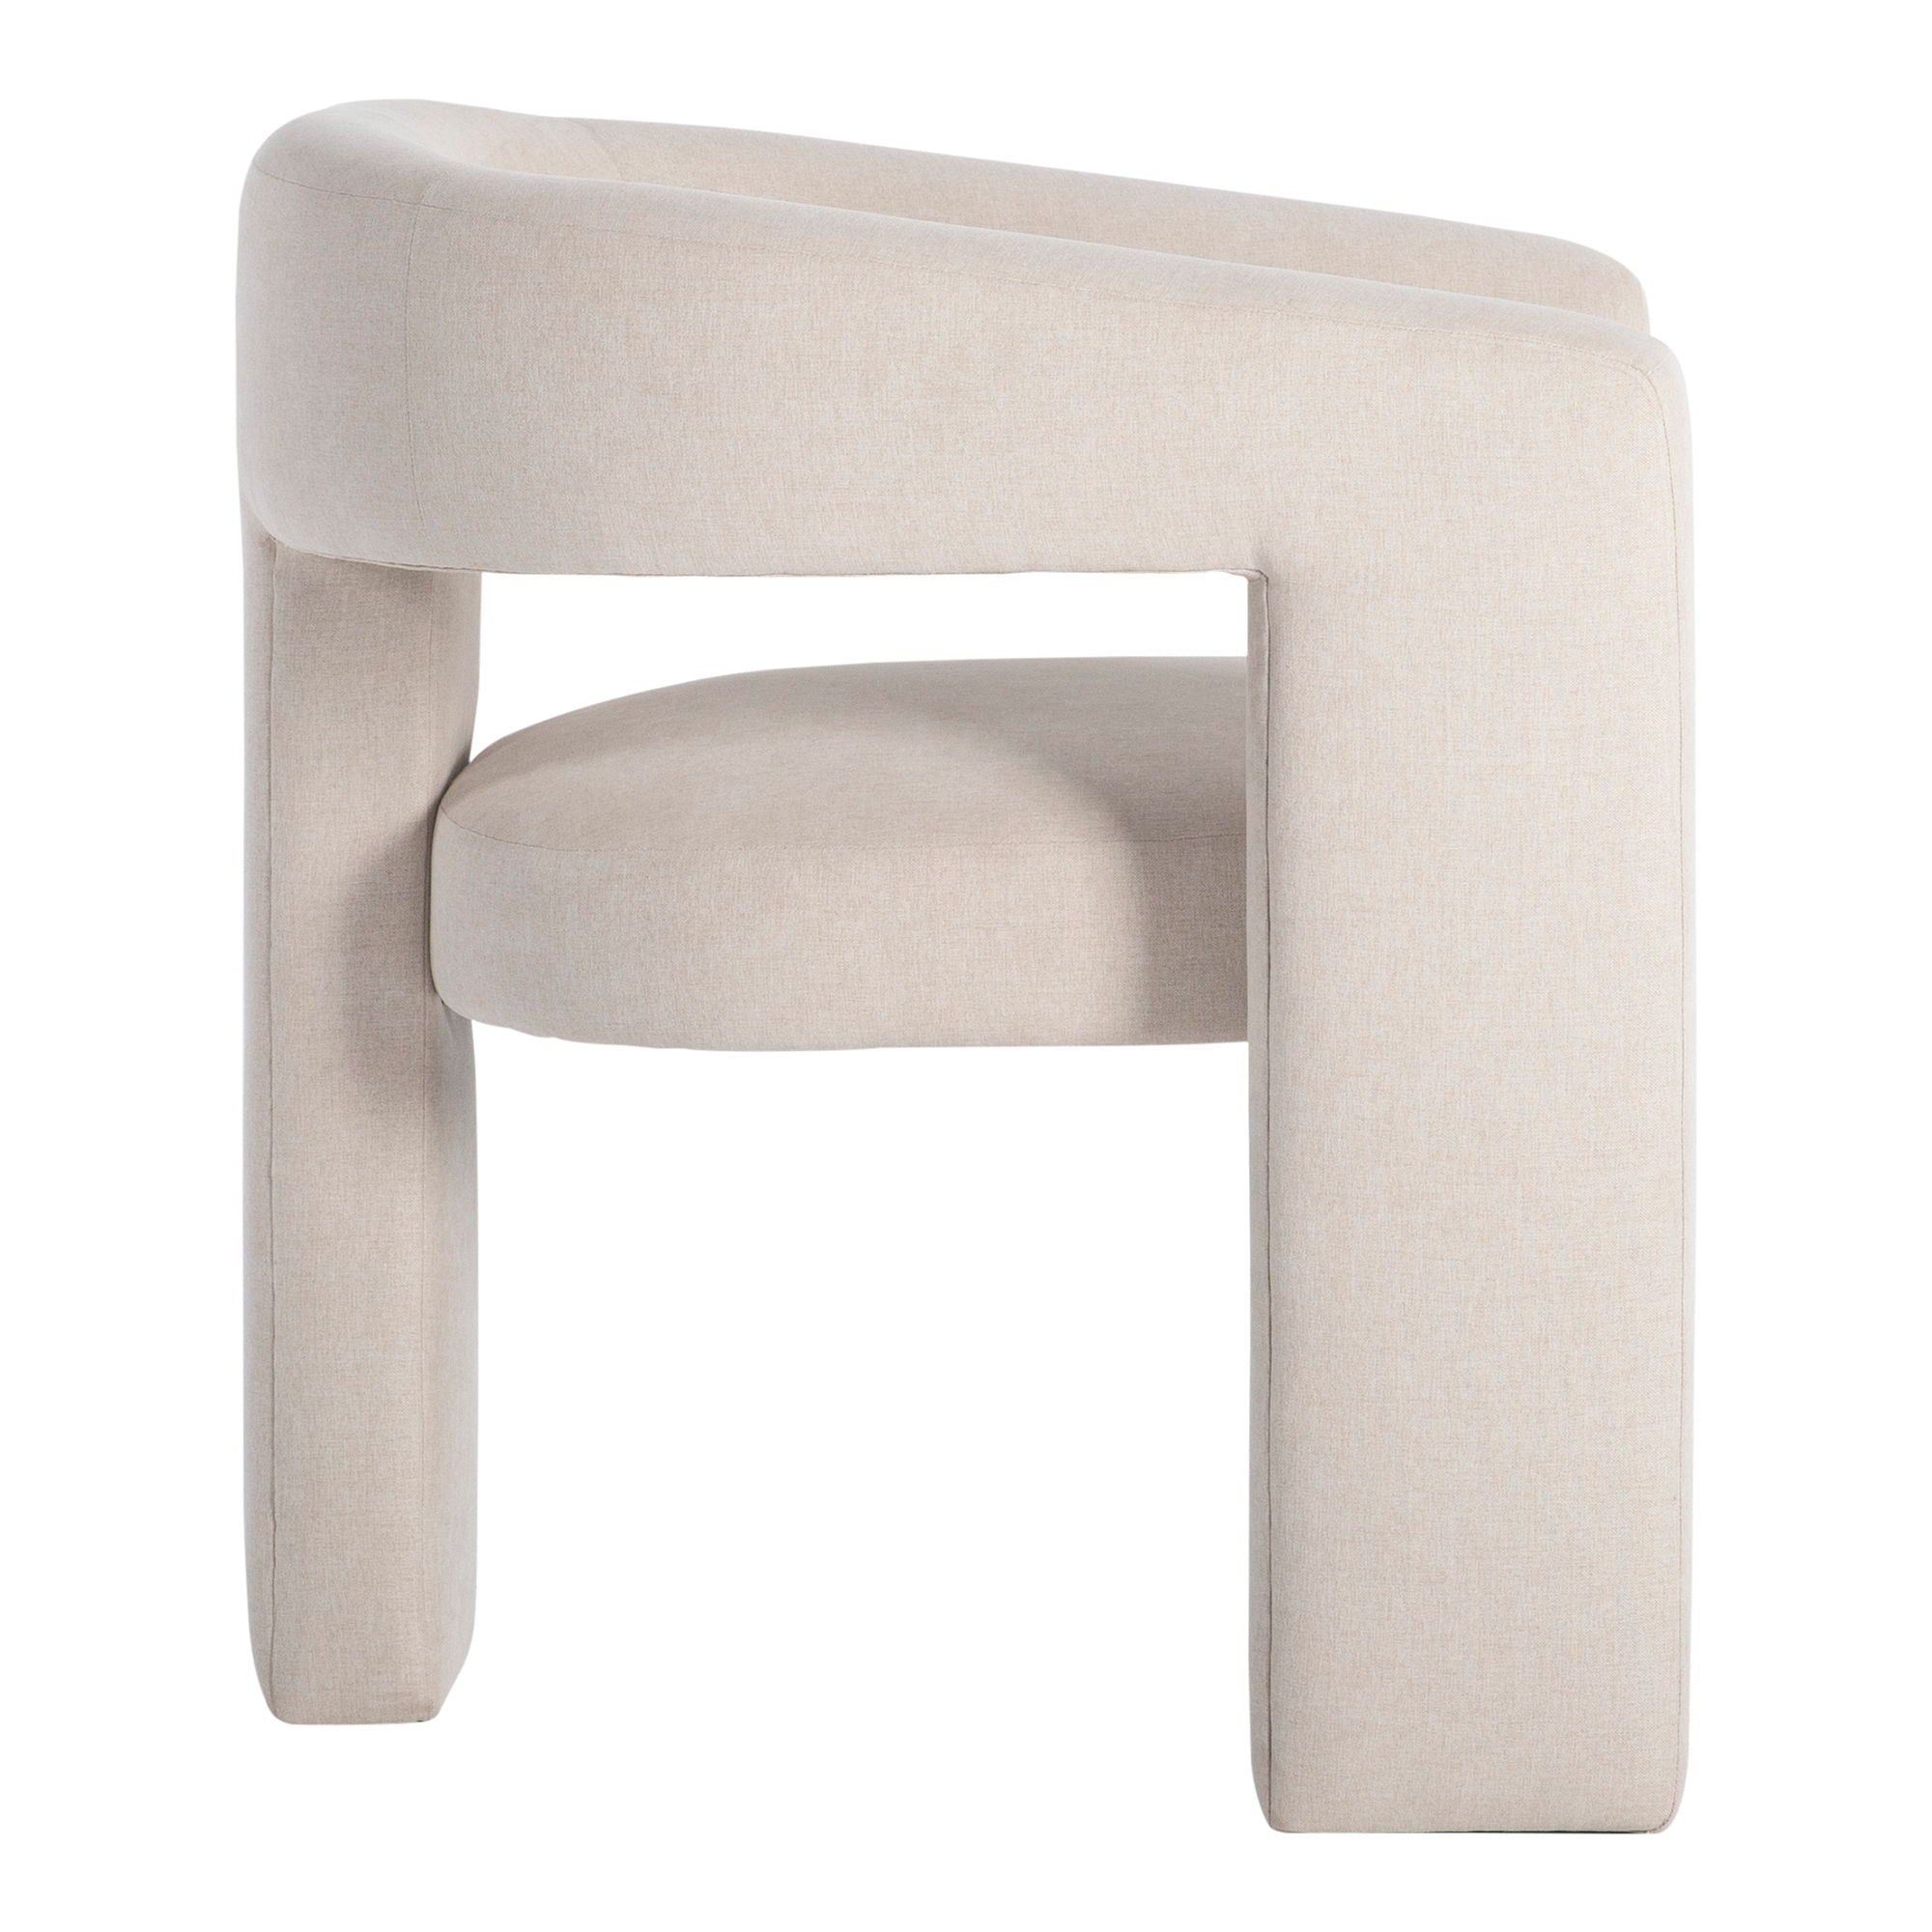 Elo - Chair - White